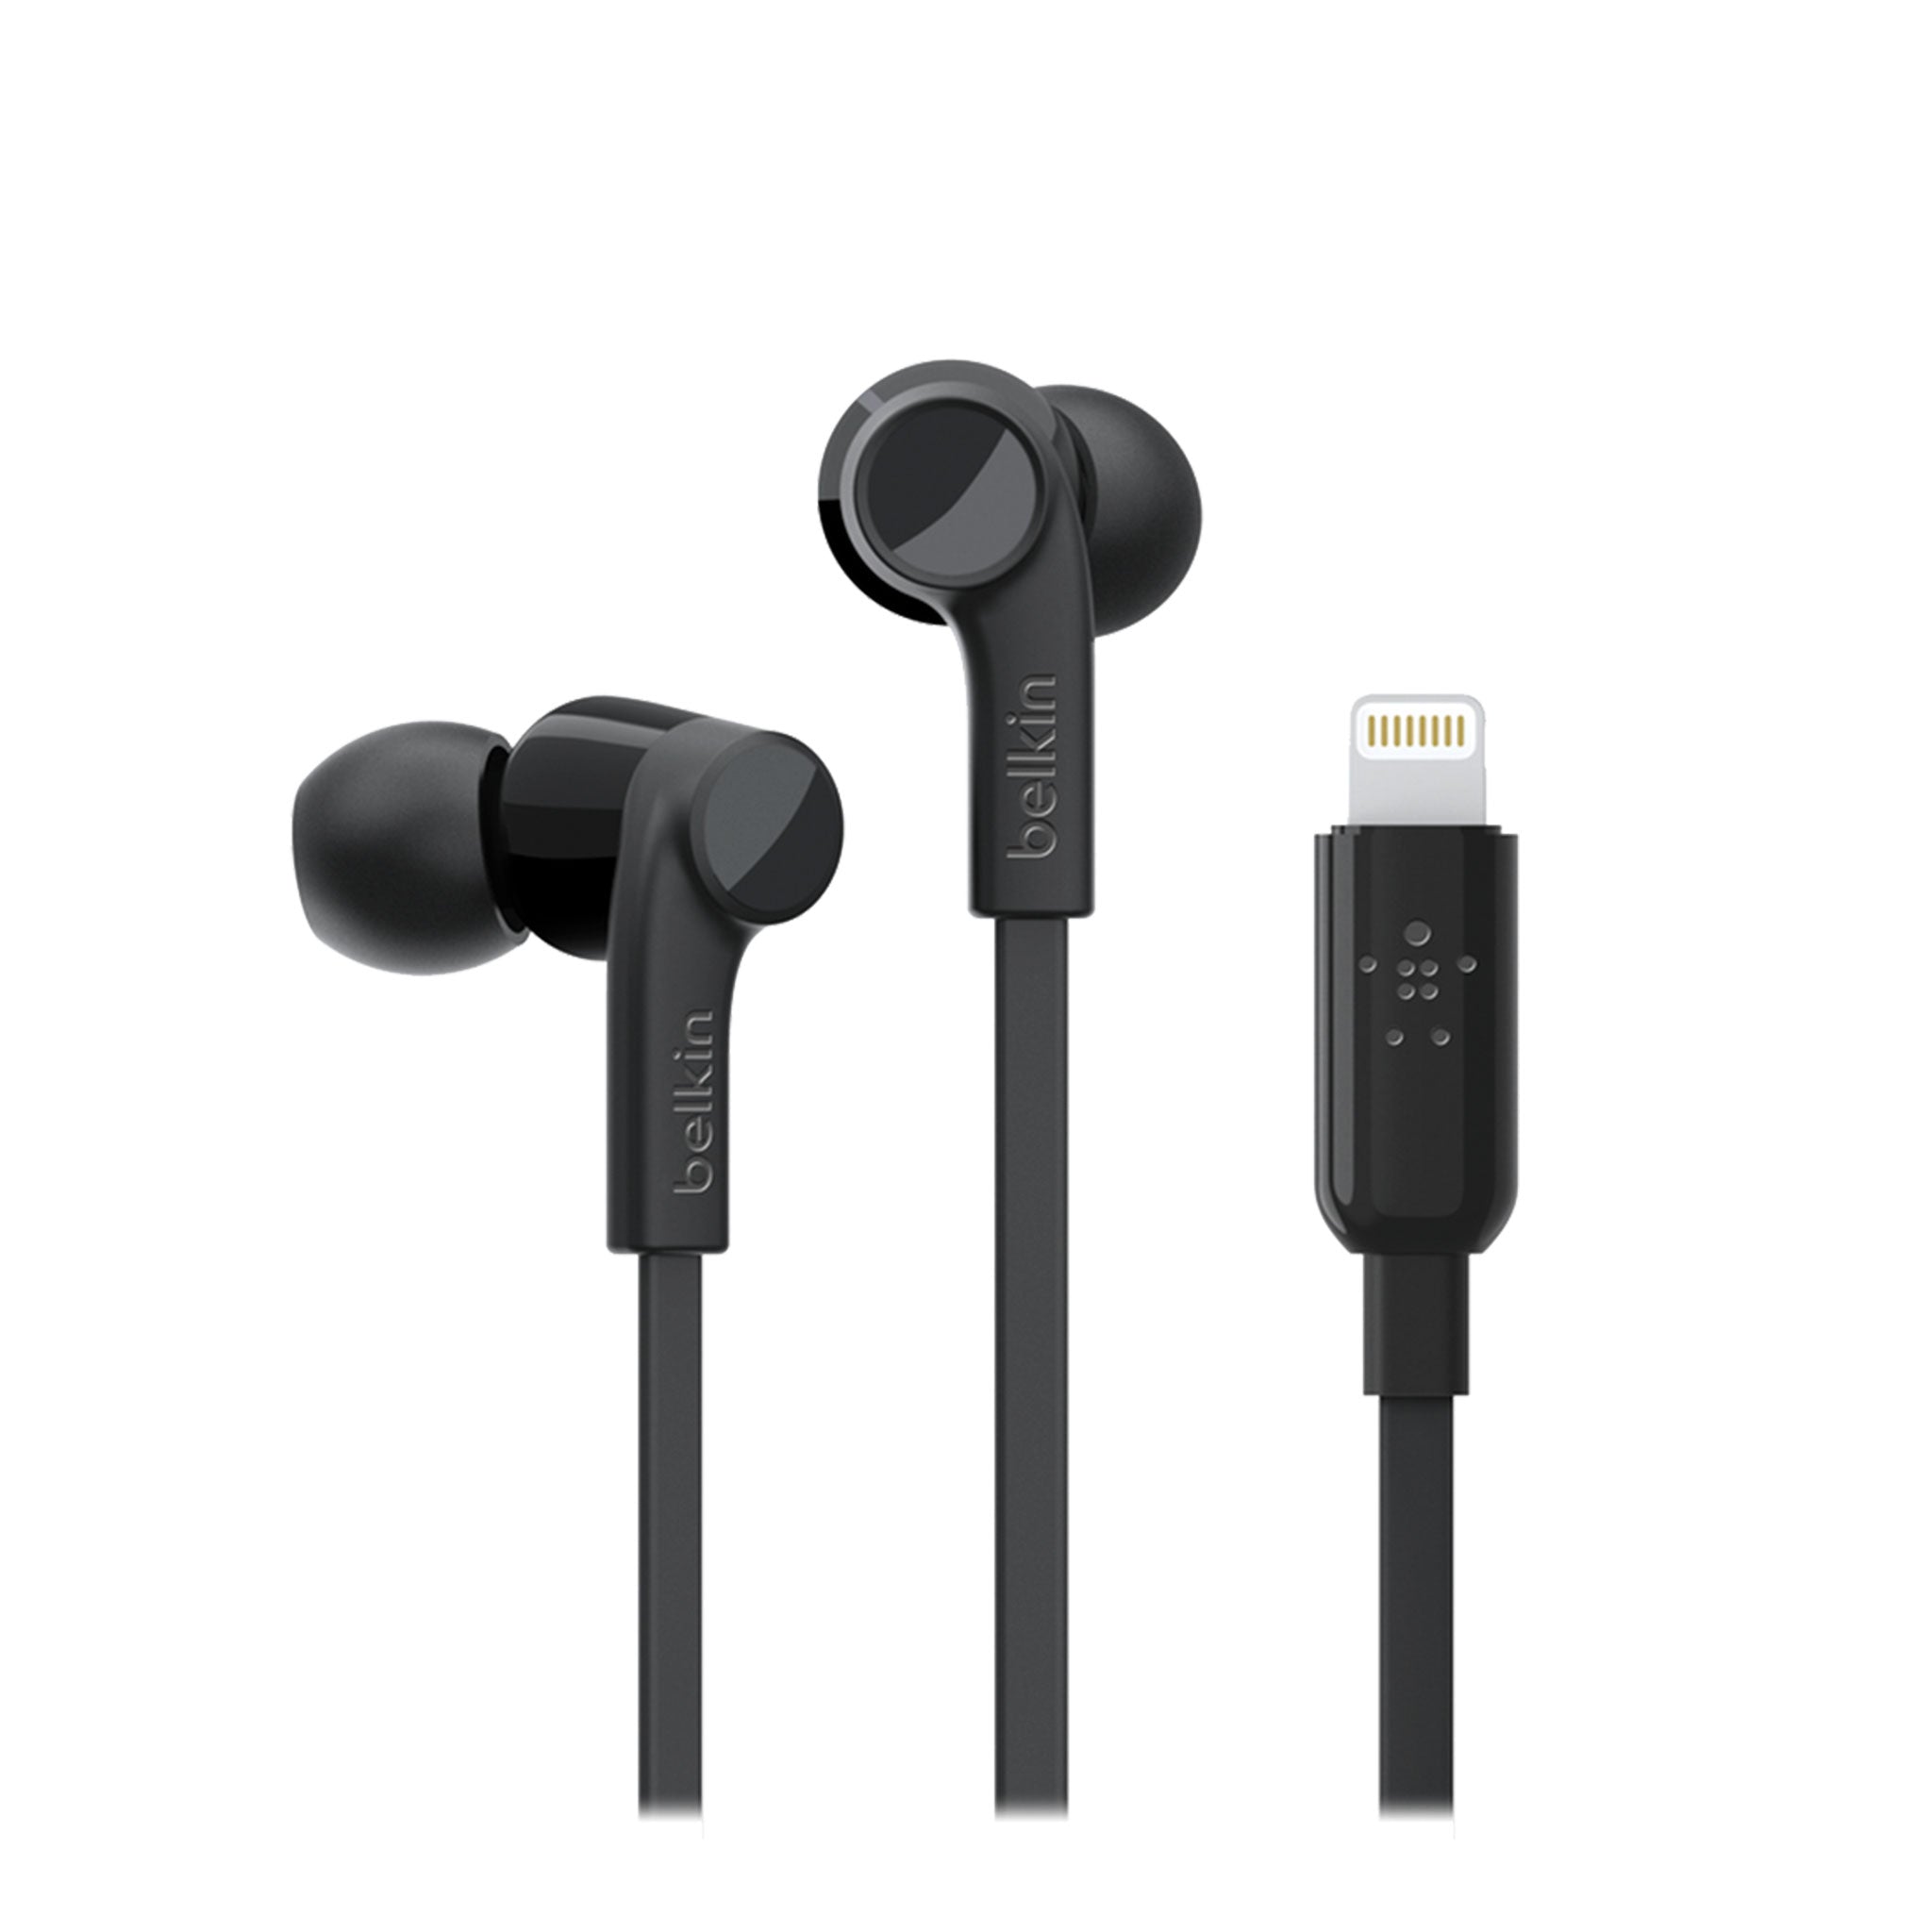 Belkin - Soundform Apple Lightning In Ear Headphones - Black